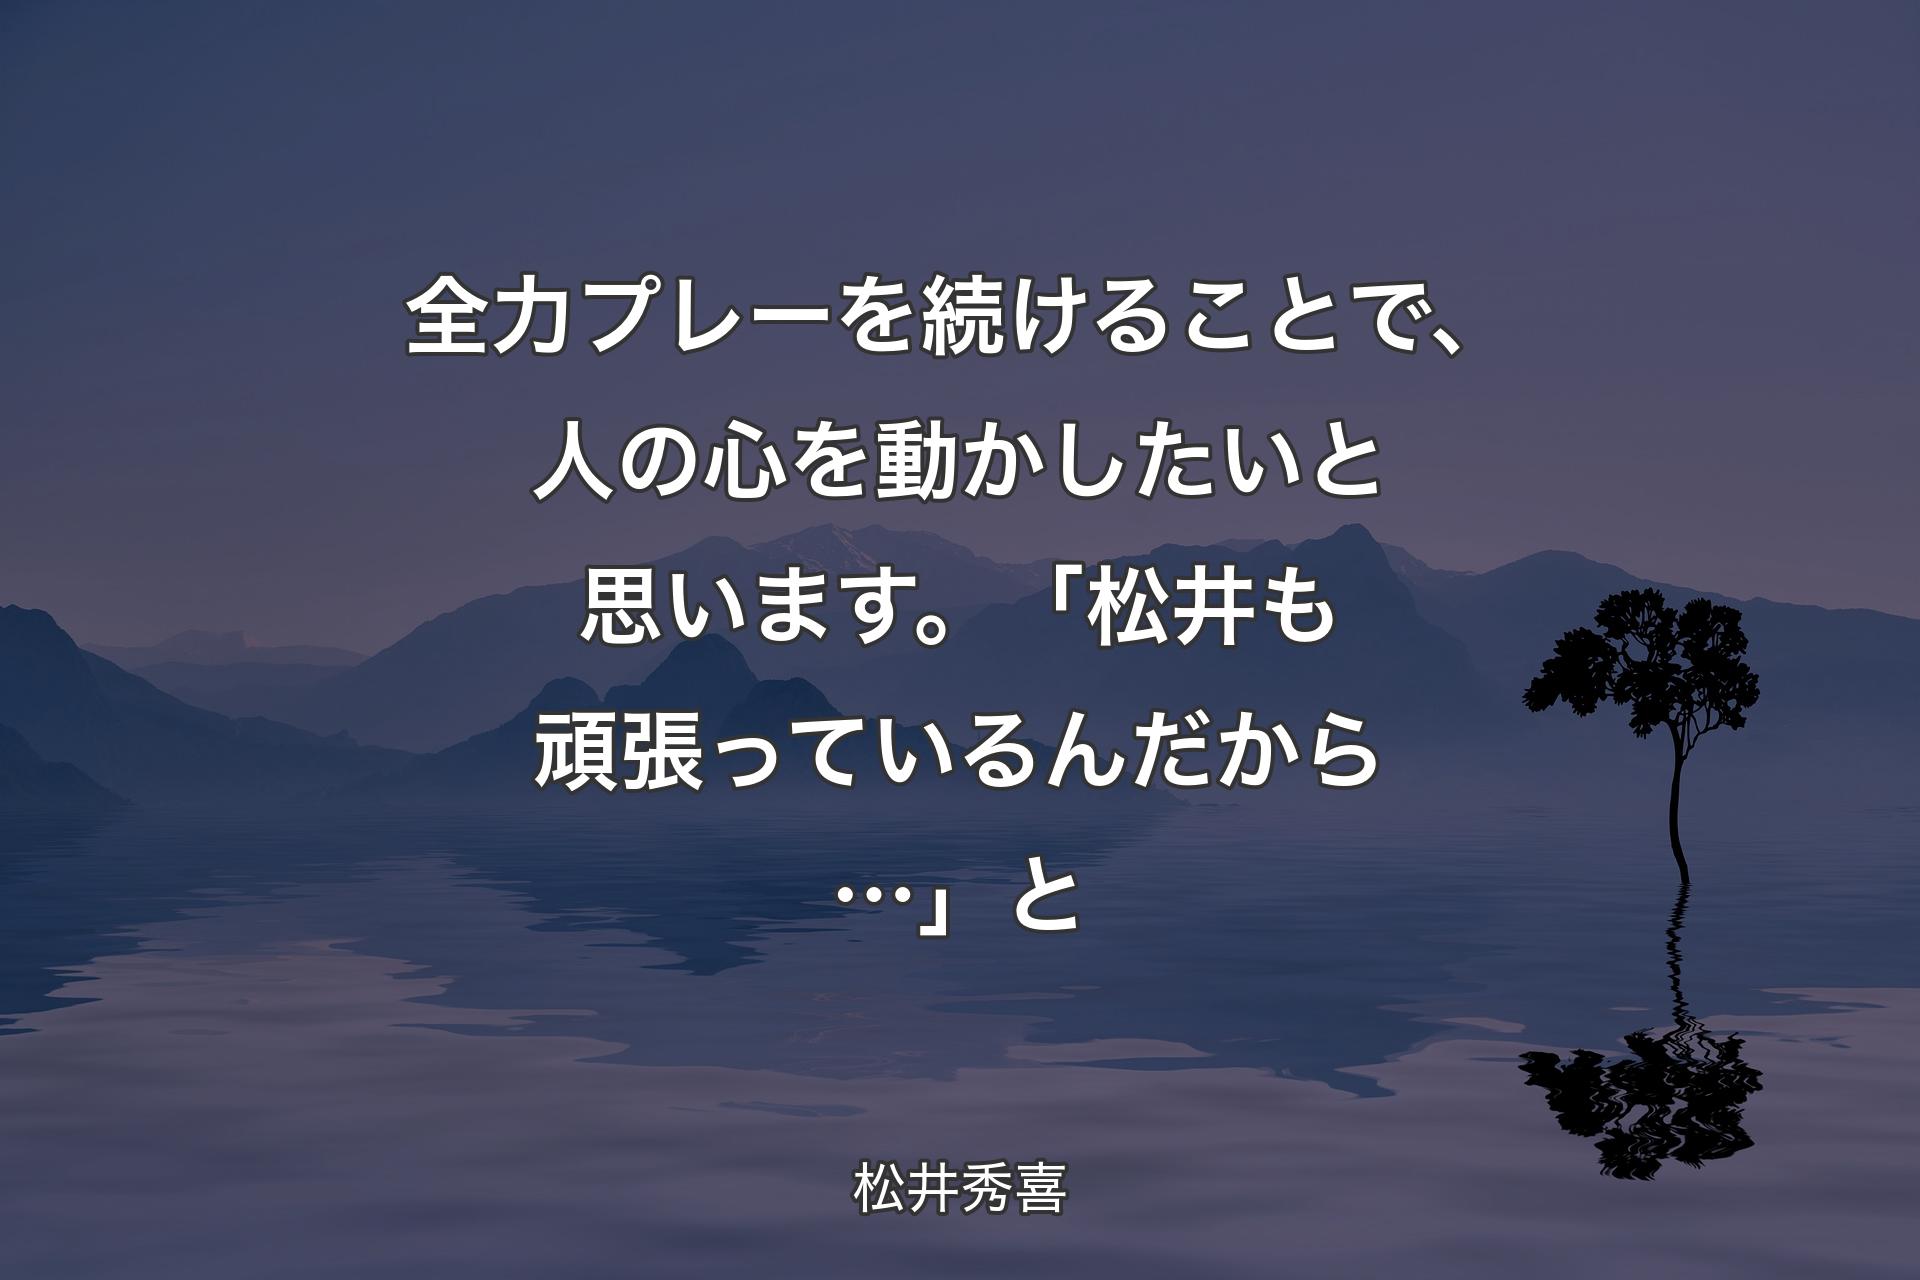 【背景4】全力プレーを続けることで、人の心を動かしたいと思います。「松井も頑張っているんだから…」と - 松井秀喜